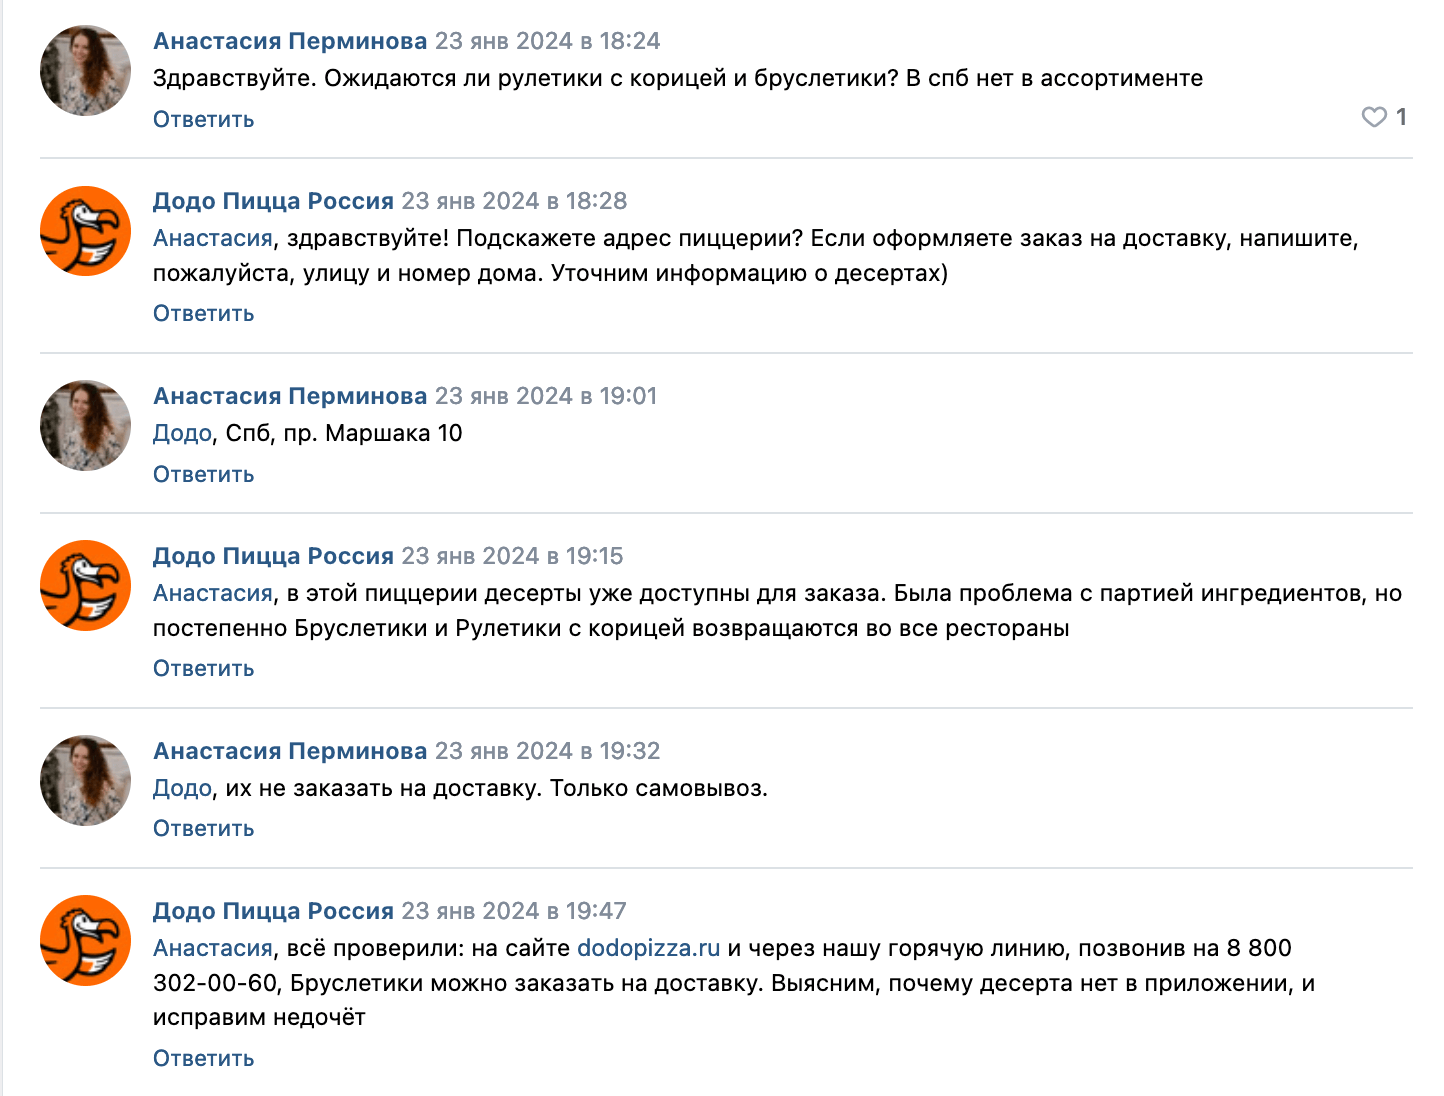 Додо Пицца общается с клиентами в группе ВКонтакте